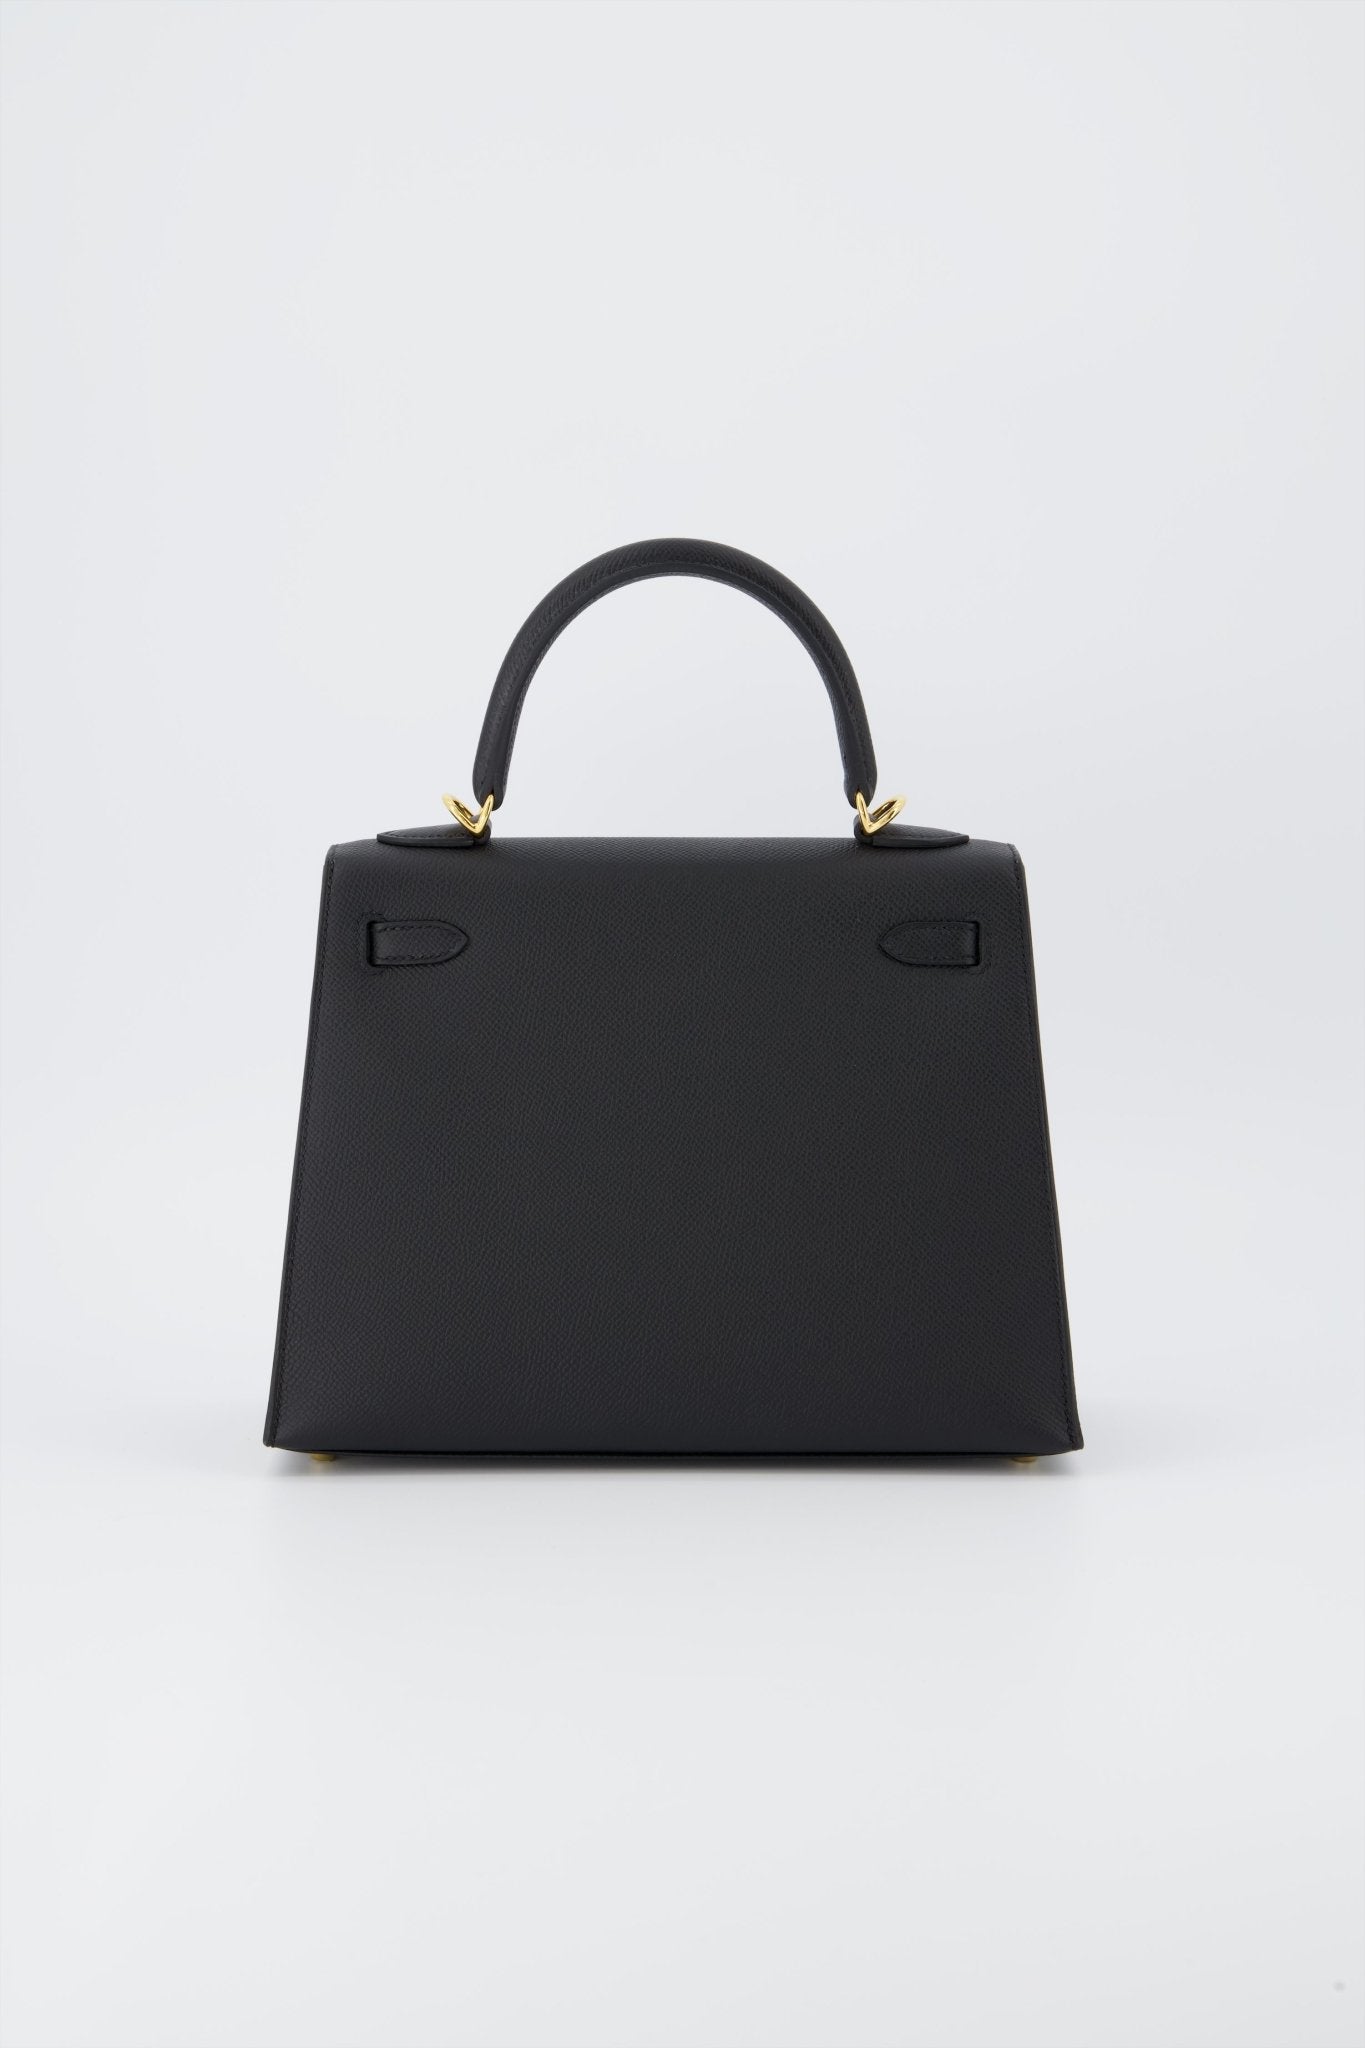 Holy Grail* Hermes Birkin 25 Handbag Black Togo Leather With Gold